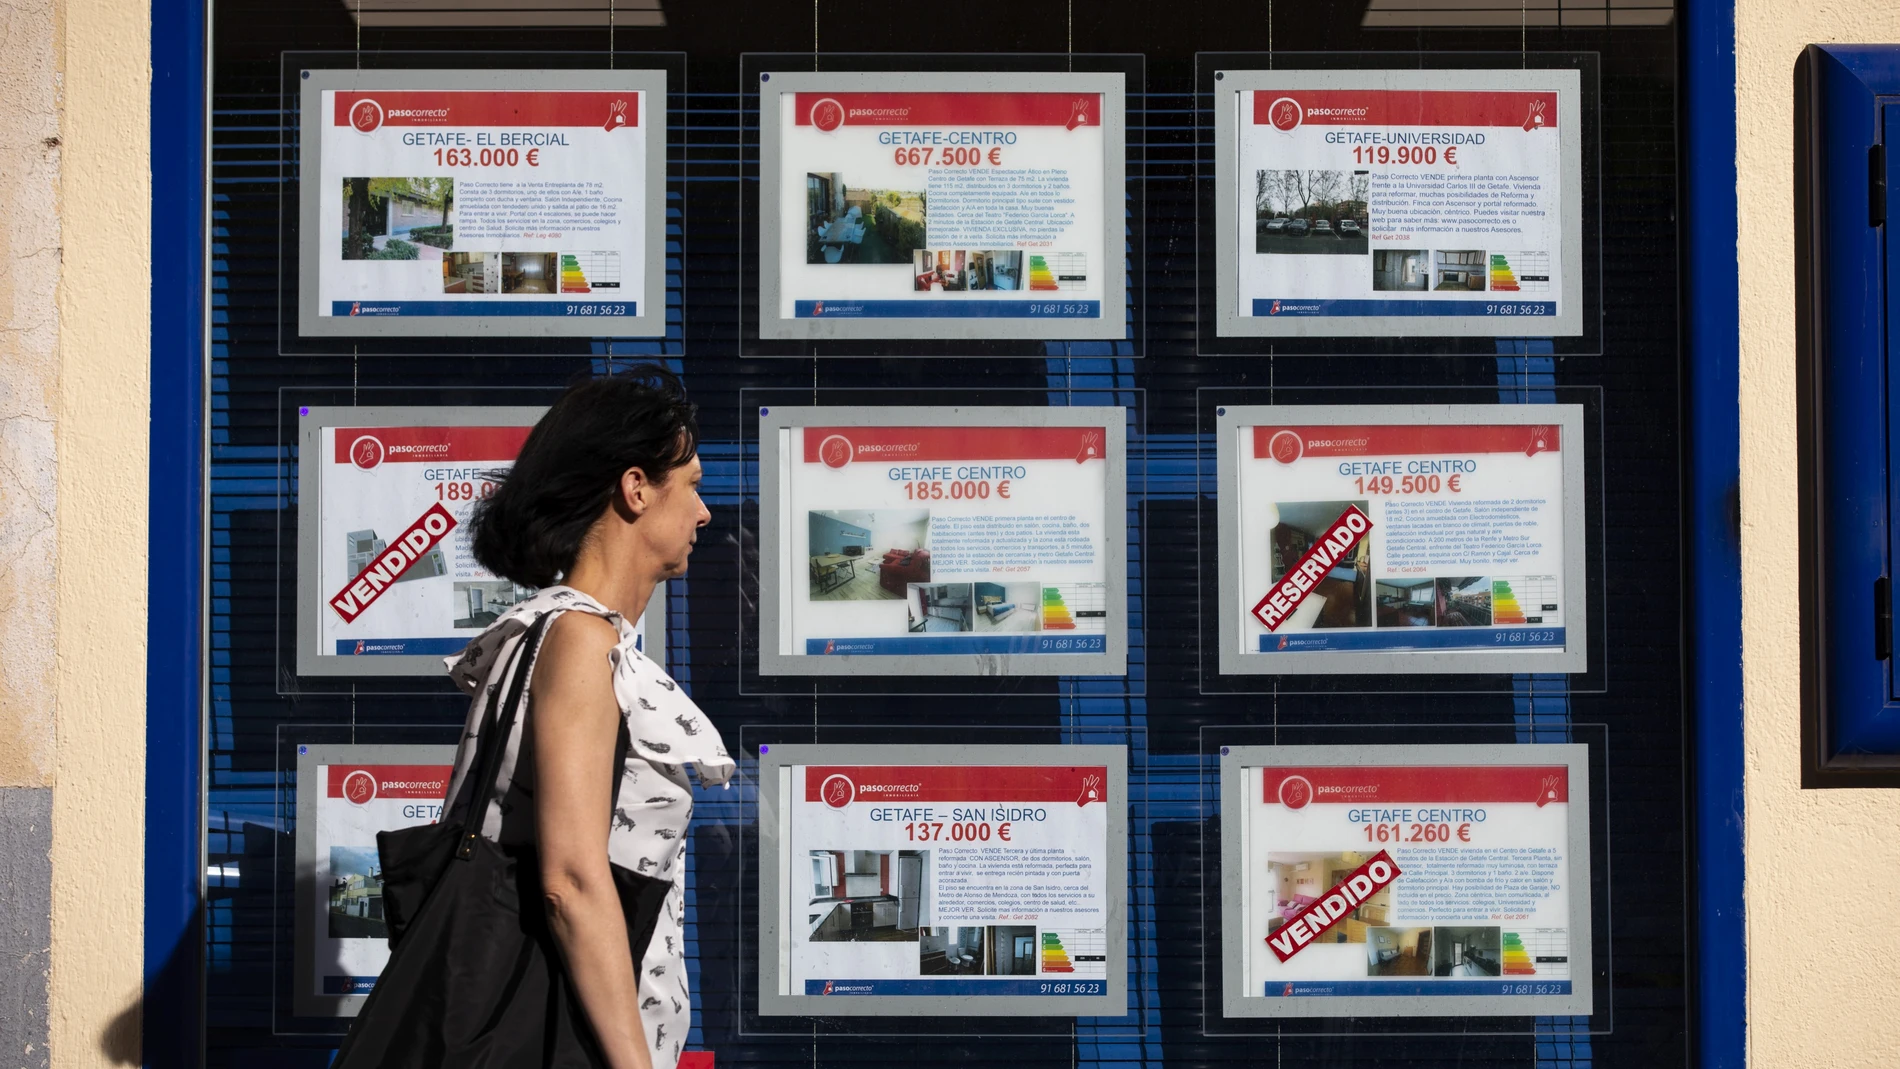 Imagen de anuncios de oferta de venta y alquiler de viviendas y locales en una inmobiliaria.